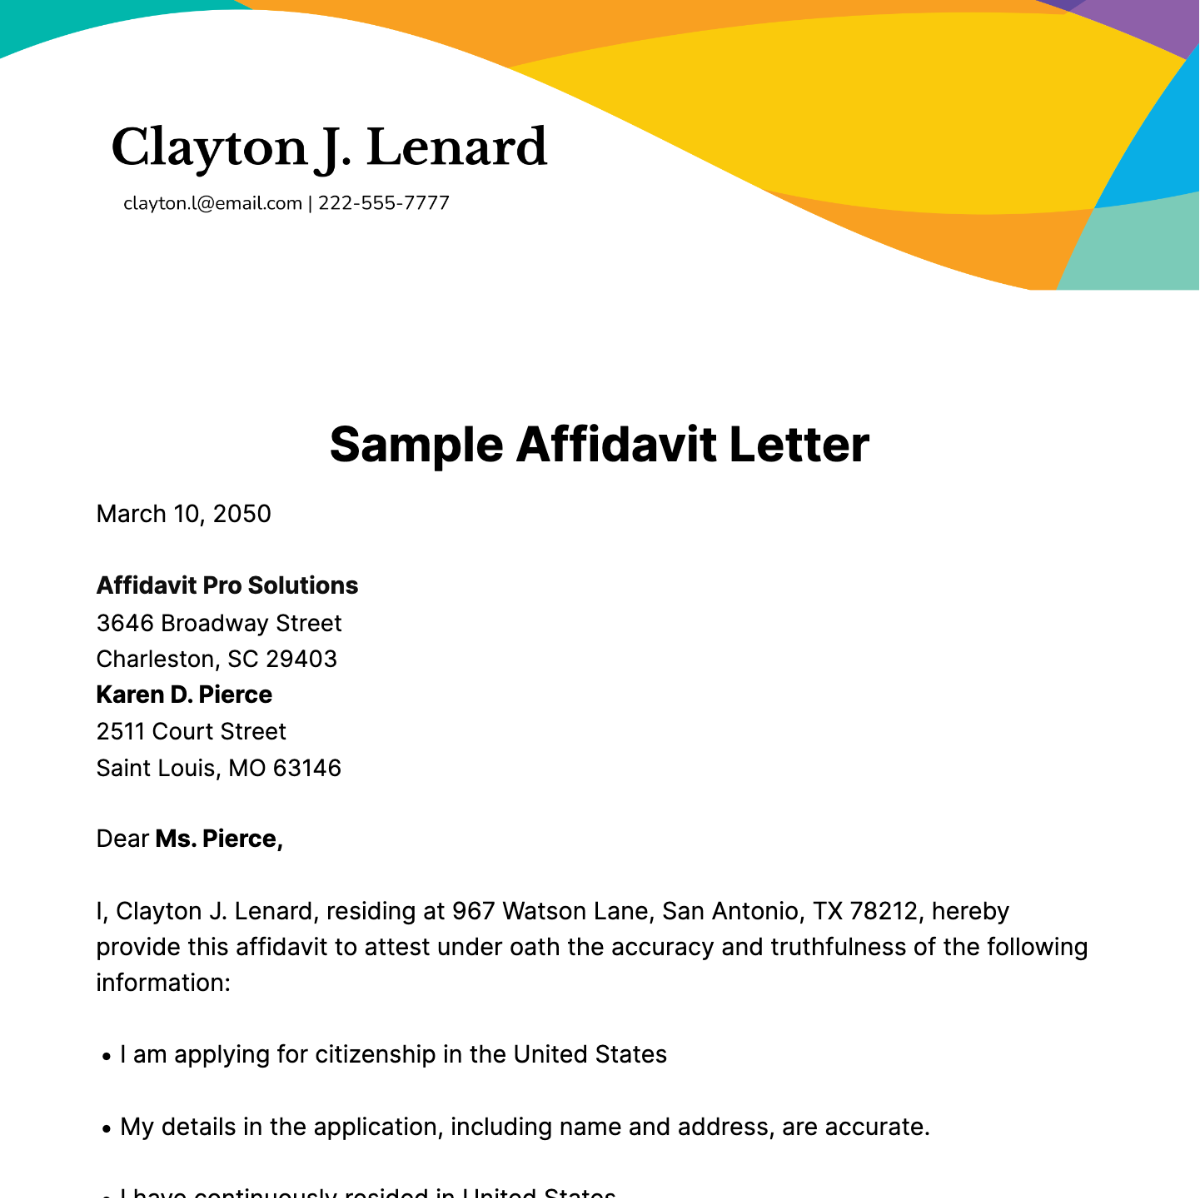 Sample Affidavit Letter Template